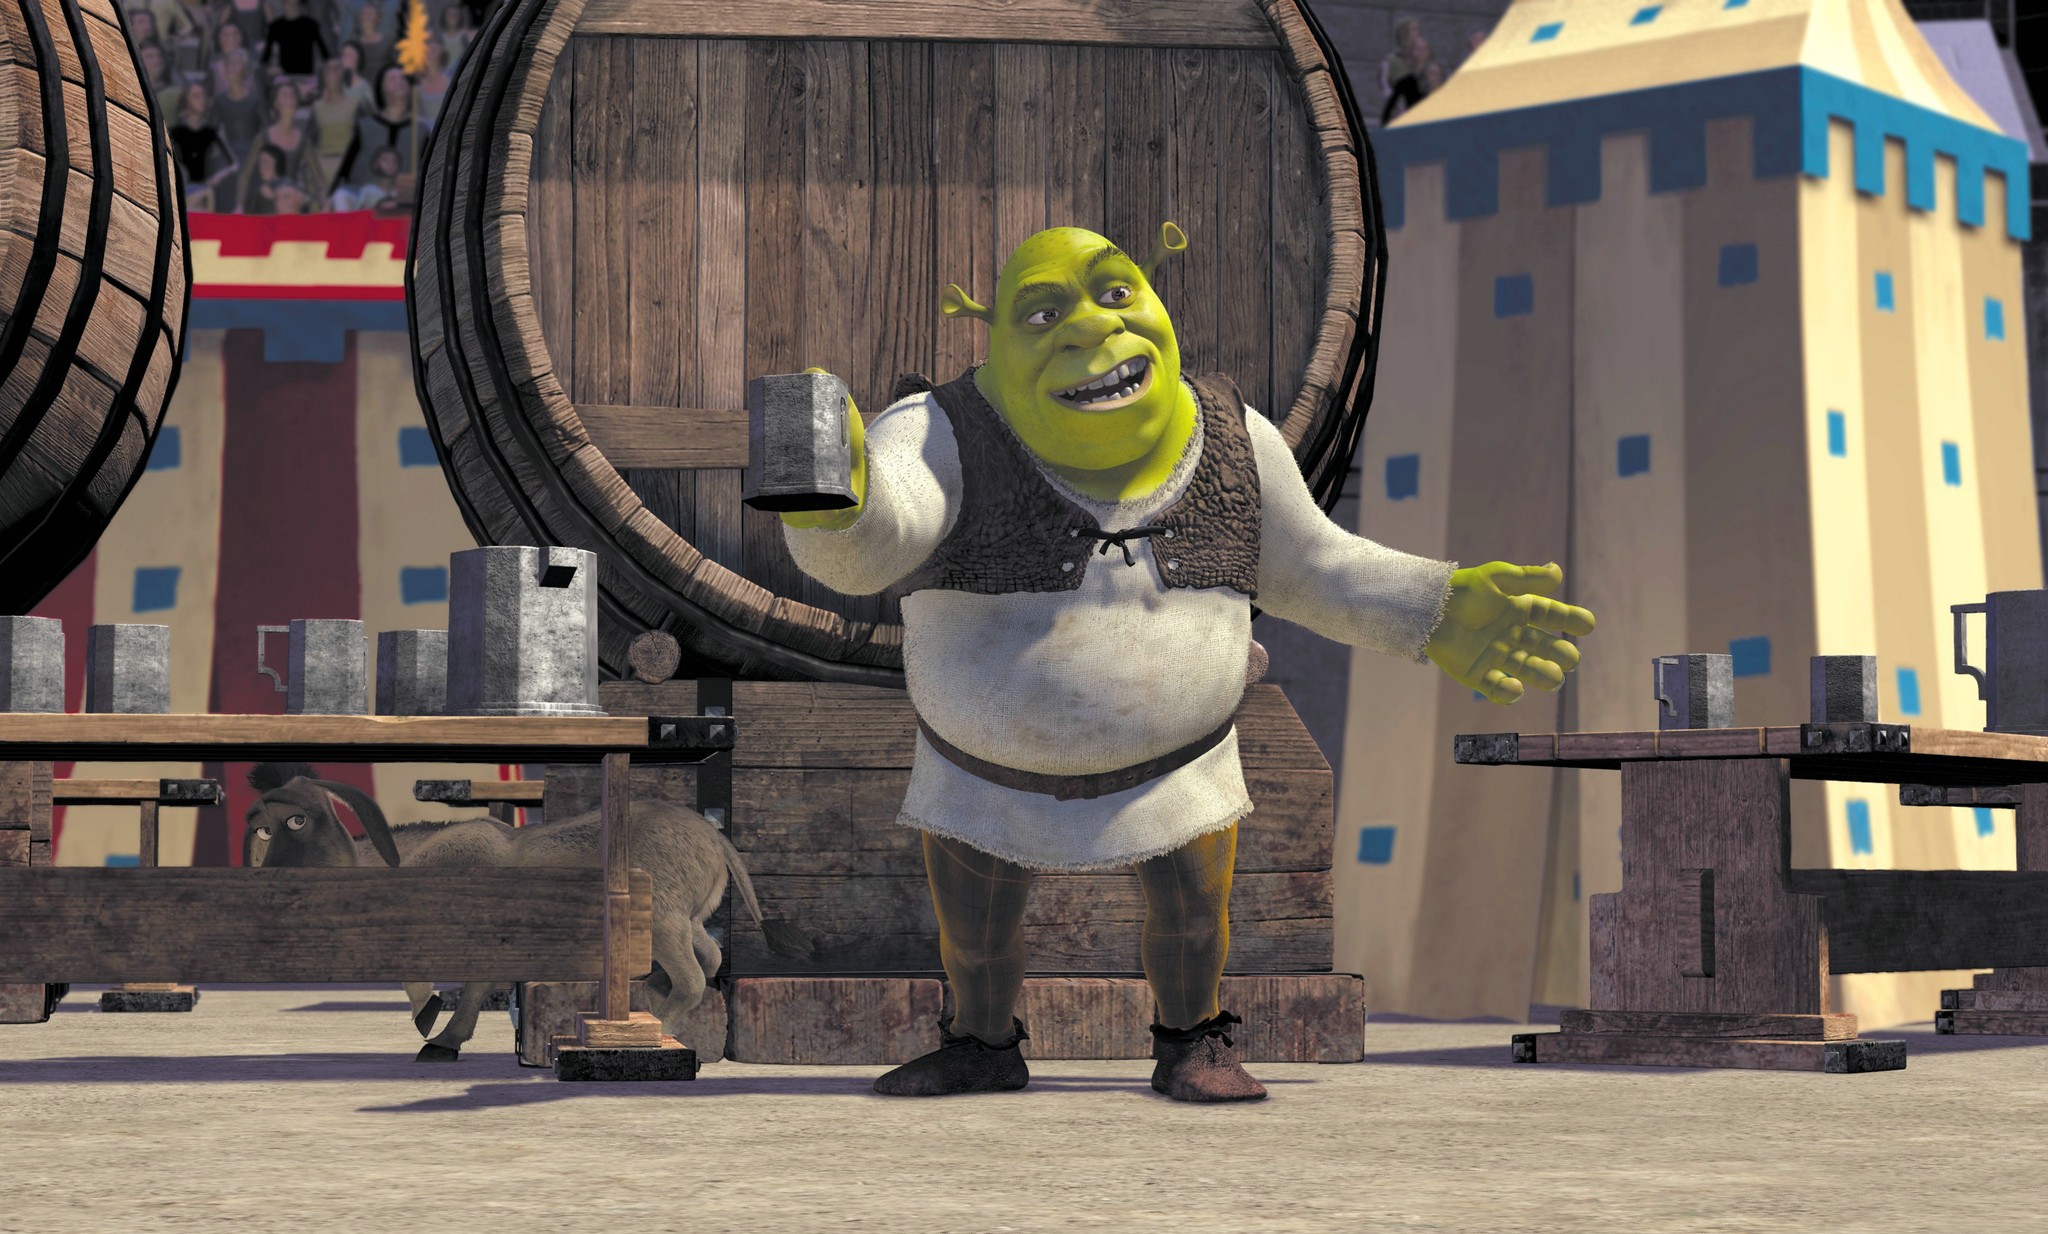 Po 16 latach oczekiwania: Shrek 5 będzie miał premierę 1 lipca 2026 roku